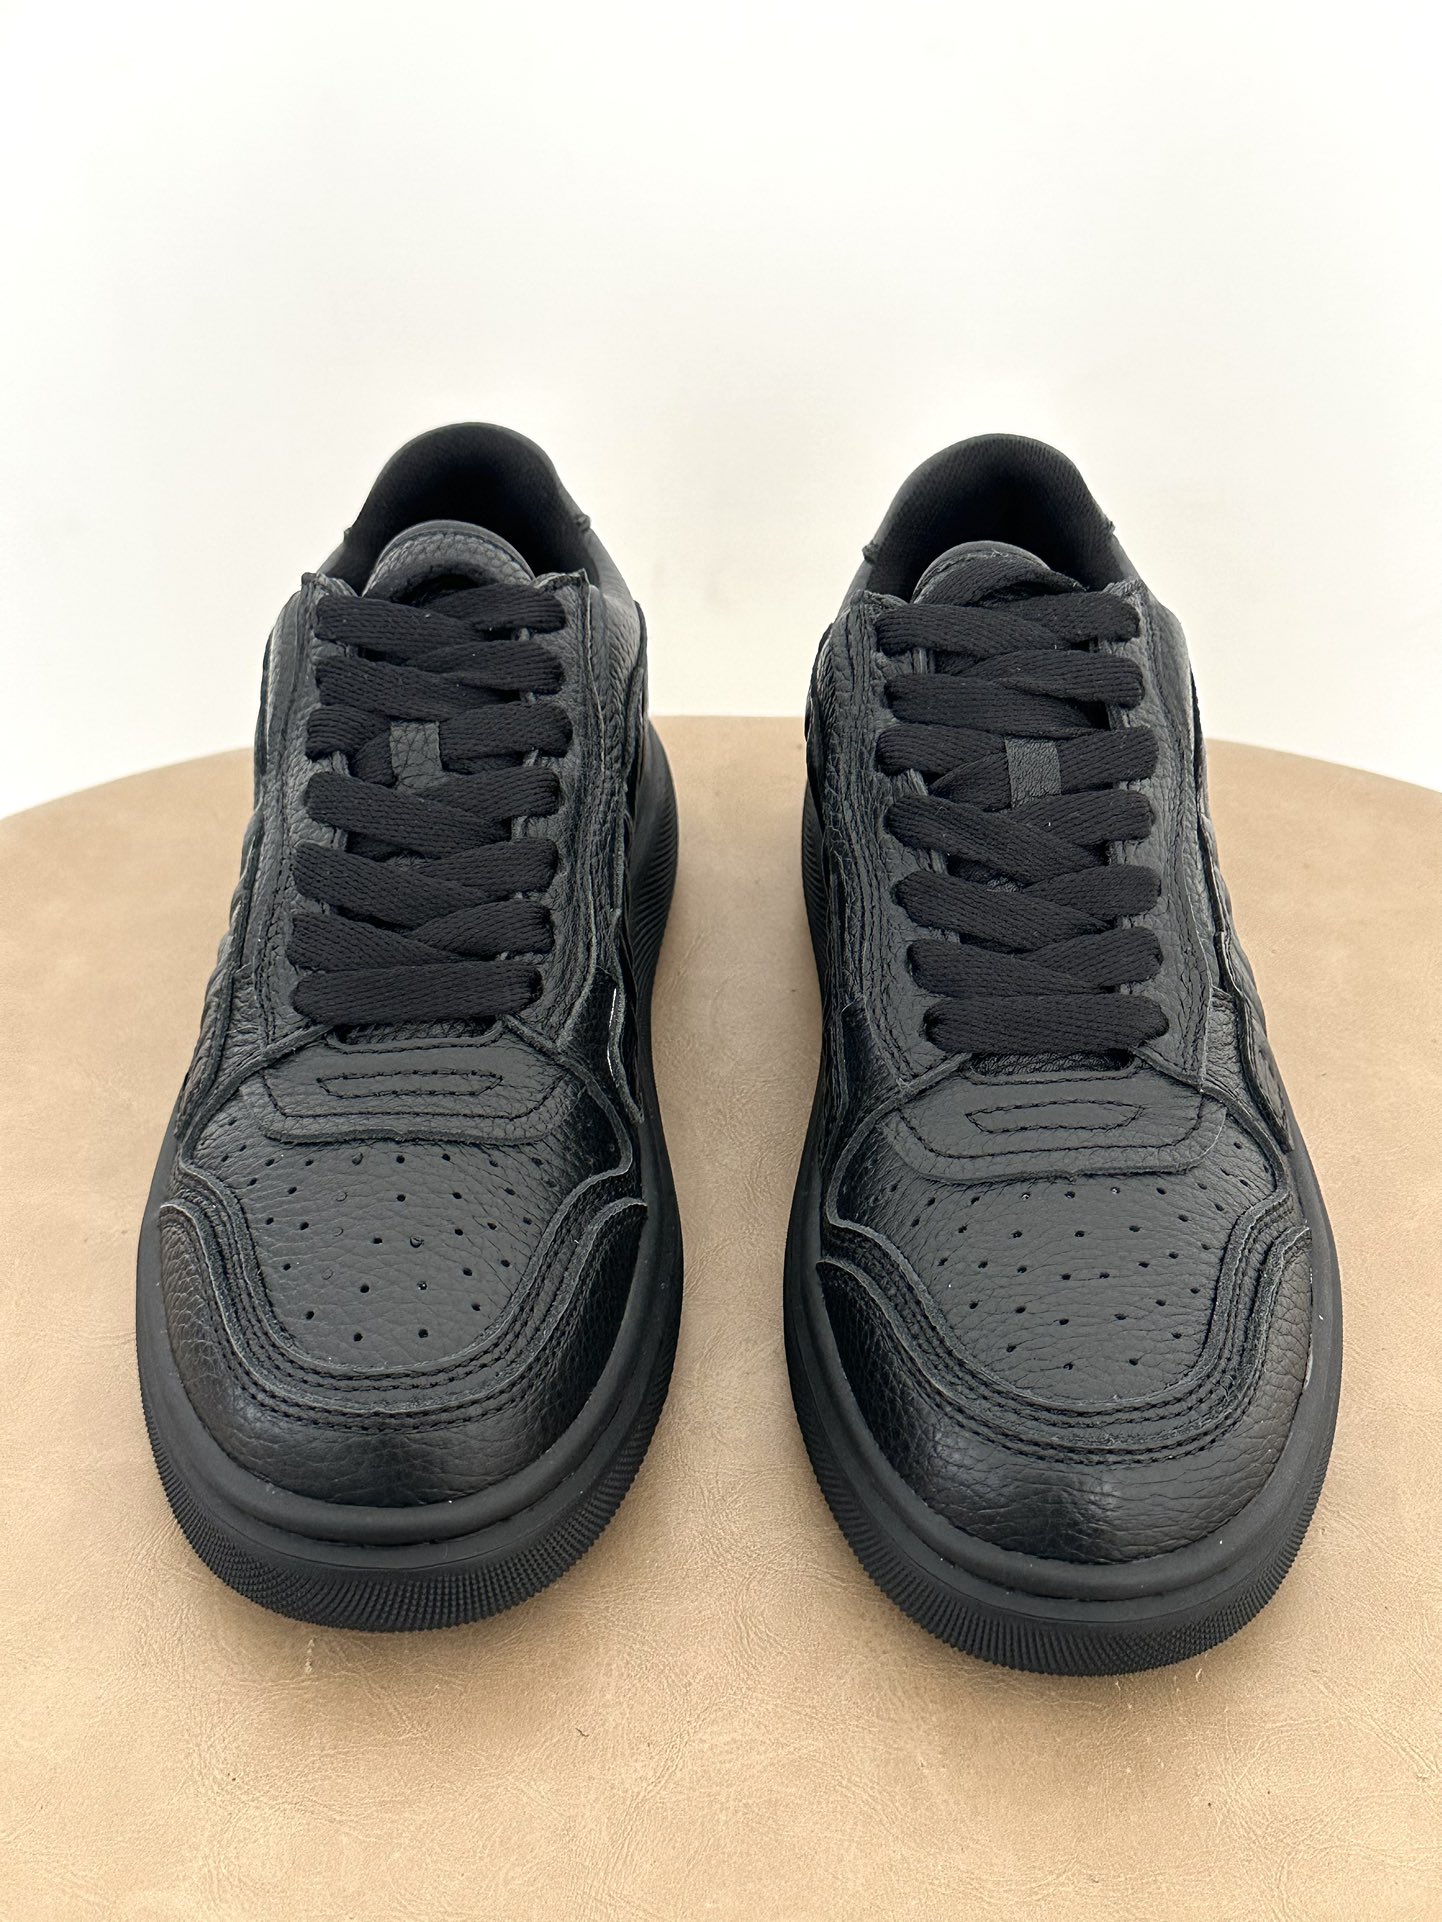 黑色▪️Peldyde AW〰️Puff 运动鞋️\nSize:35-36-37-38-39